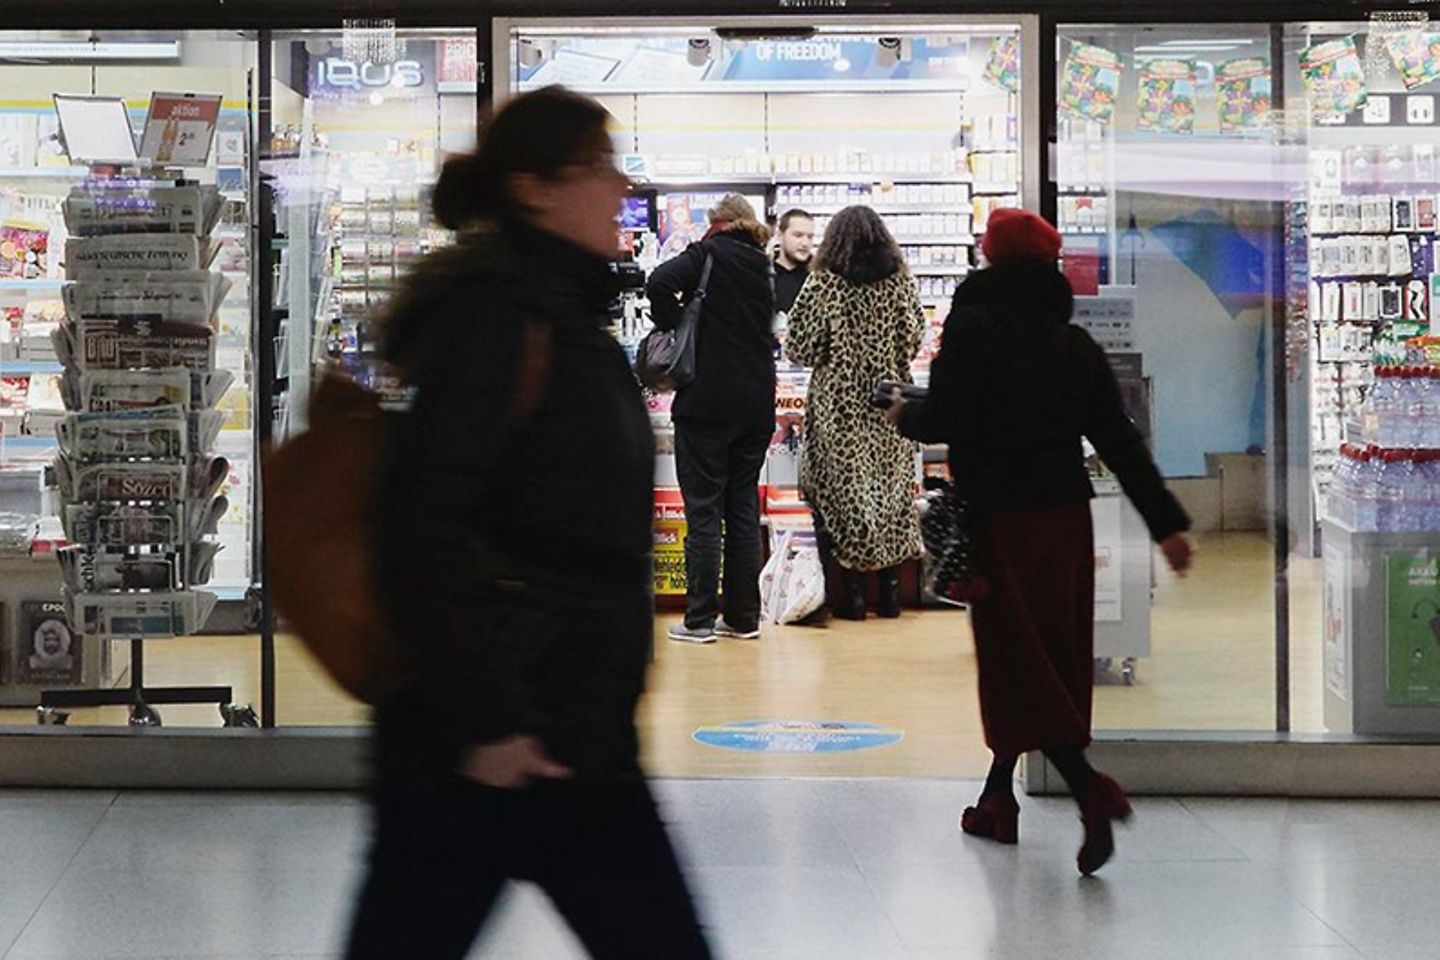 Eine schwarzgekleidete Frau geht an einem Kiosk vorbei, in dem sich mehrere Kunden befinden